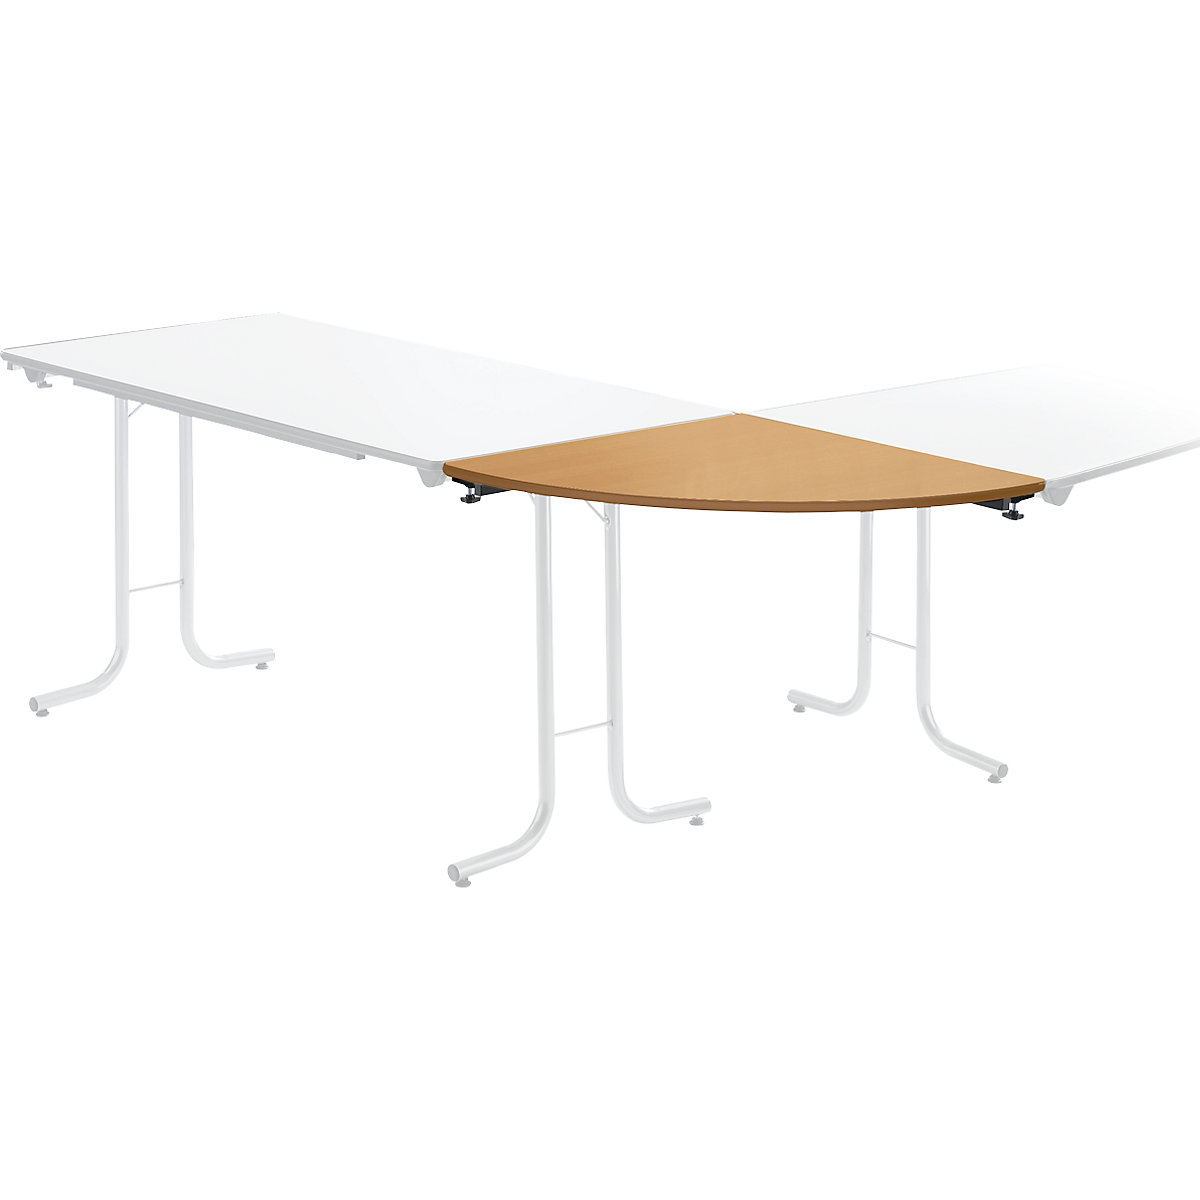 Aanbouwtafel bij inklapbare tafel, bladvorm kwartcirkel, 700 x 700 mm, frame zwart, blad beukenhoutdecor-3